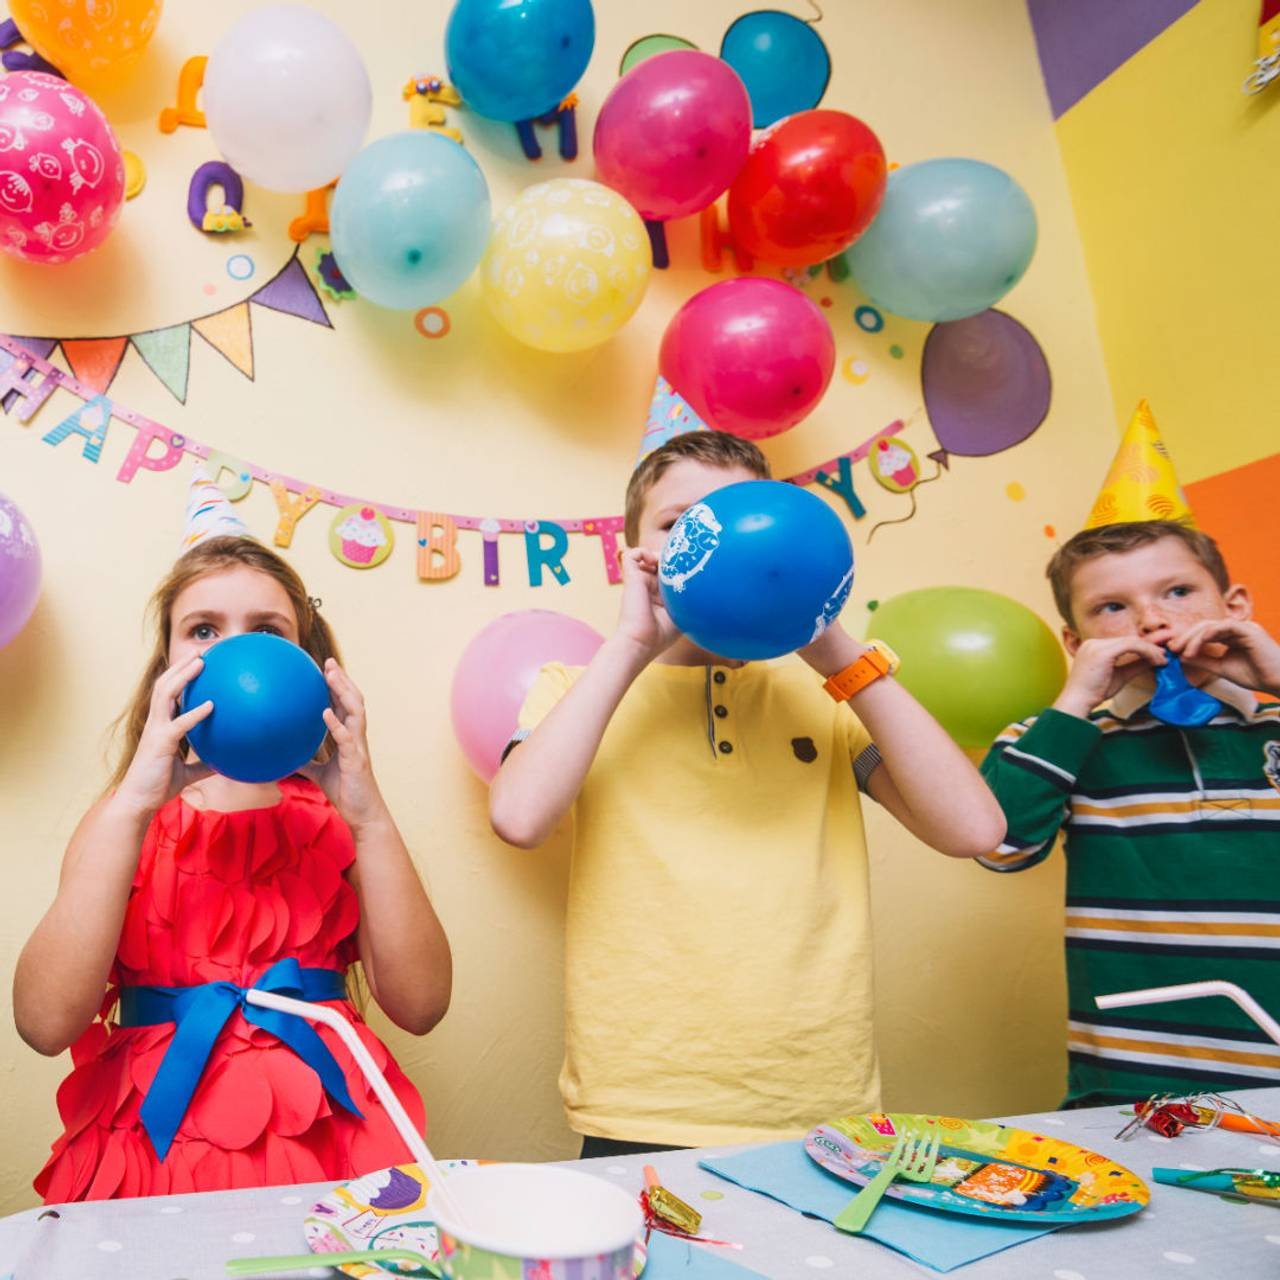 crianças em uma festa com decoração colorida 